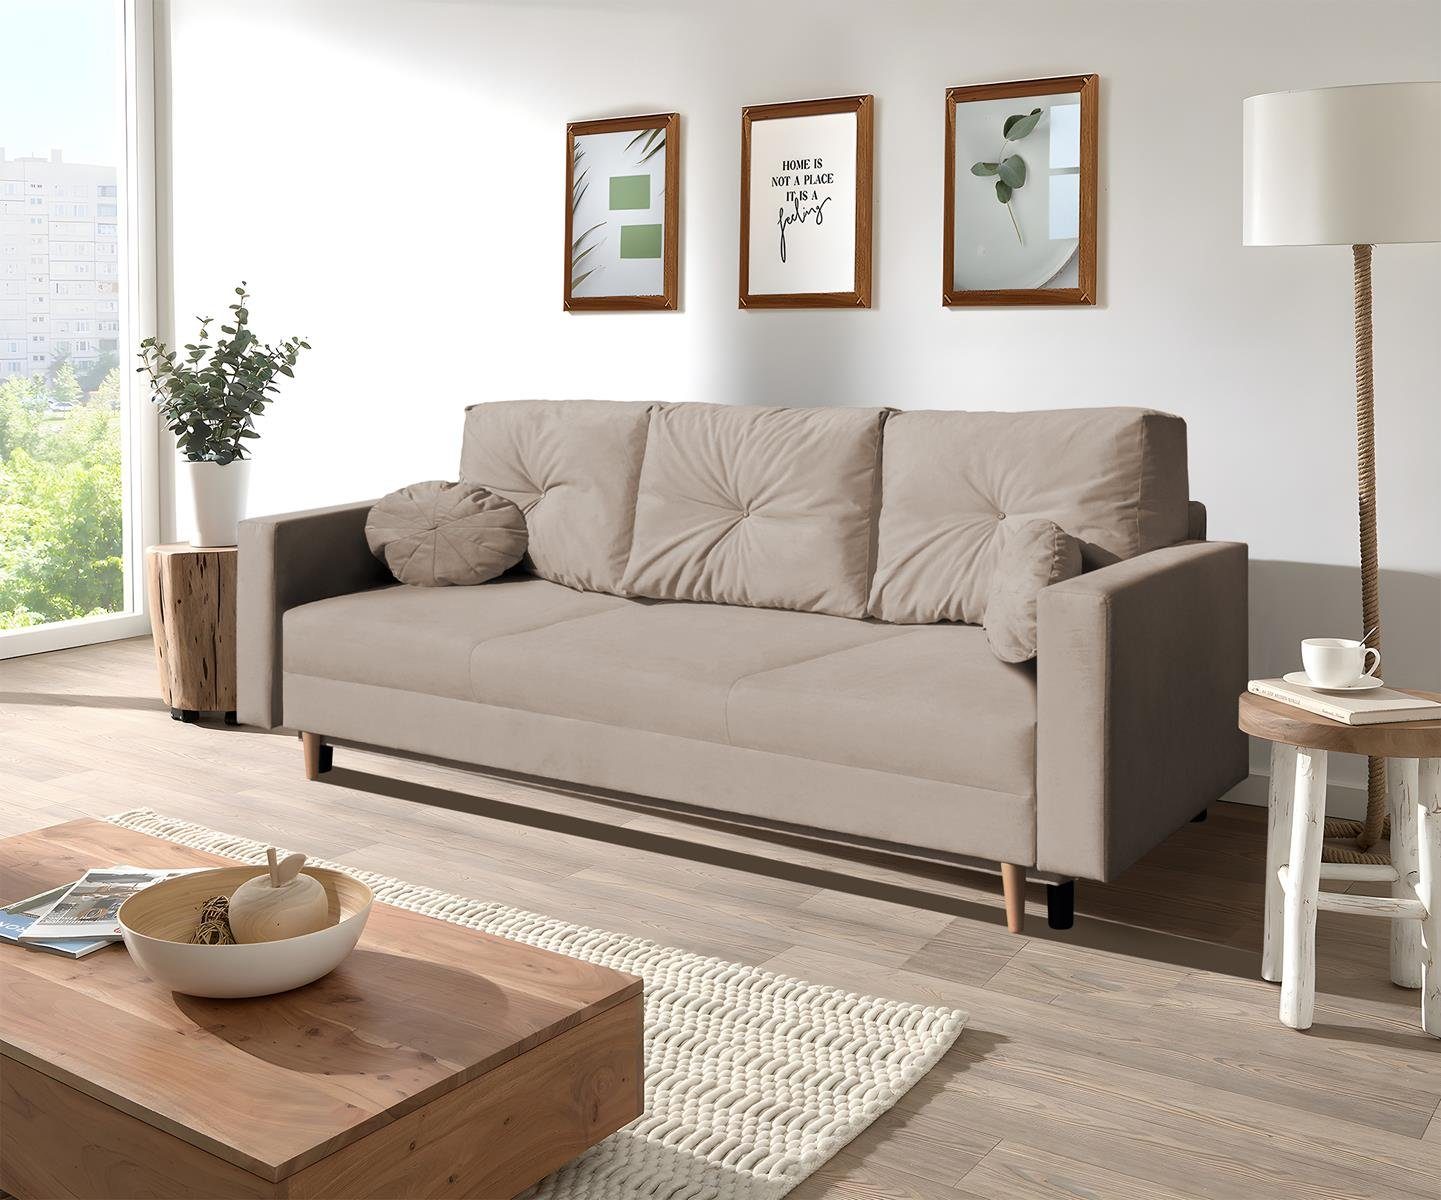 Beautysofa 3-Sitzer MILAN, skandinavisches Design, Wellenunterfederung, Bettkasten, Holzbeine, 3-Sitzer Sofa mit Relaxfunktion Hellbraun (trinity 03)